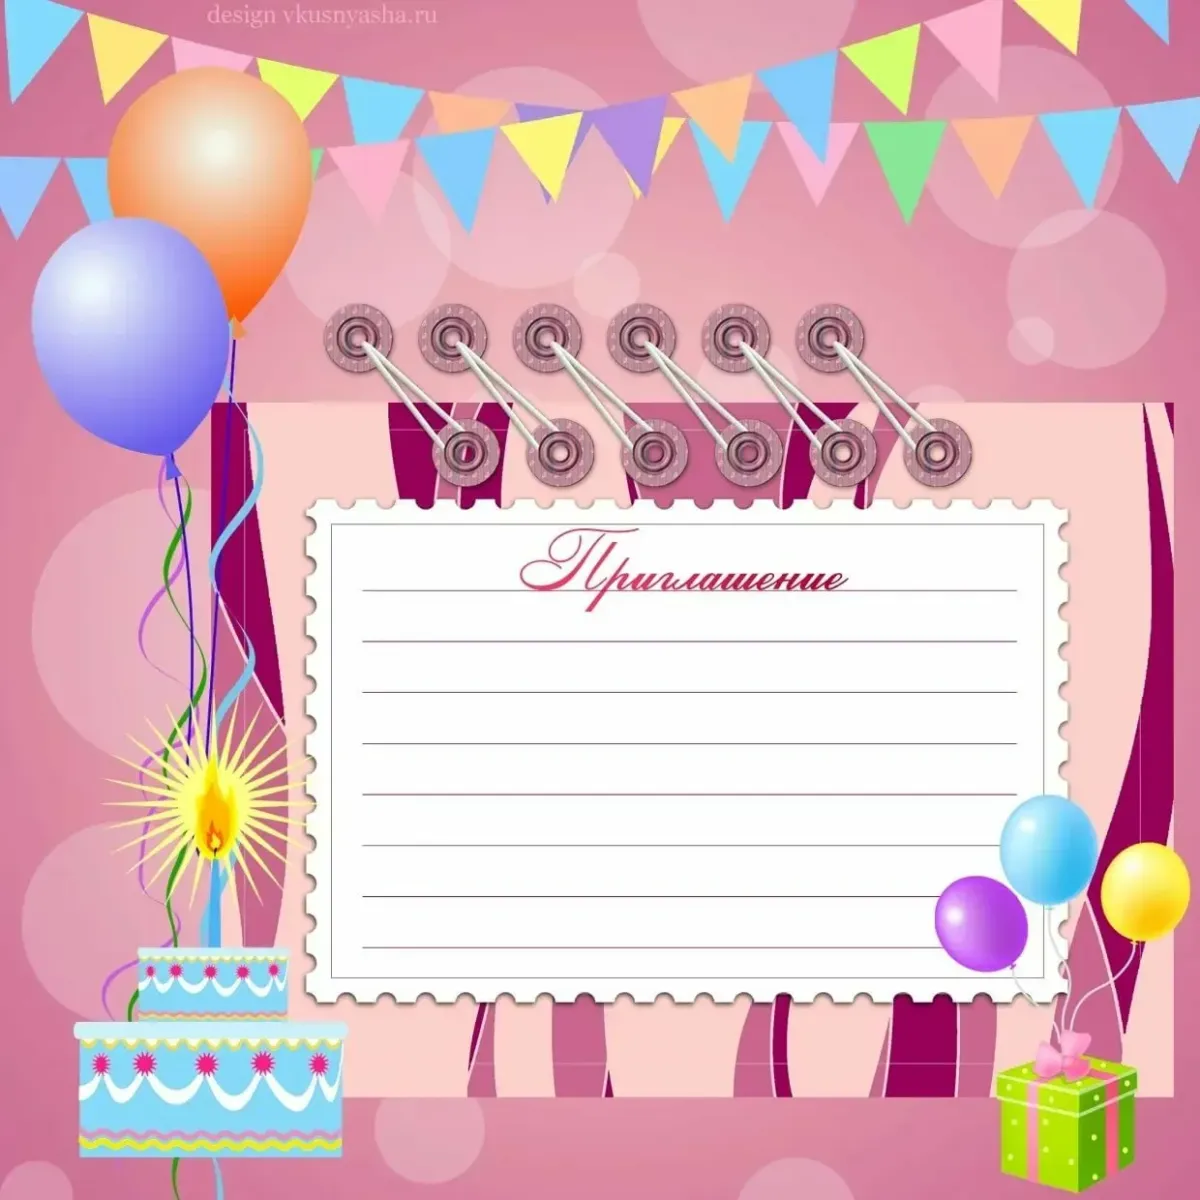 Сделать электронное приглашение на день рождения. Приглашение на день рождения. Пригласительная открытка на день рождения. Макет приглашения на день рождения. Приглашение на день рождения ребенка.